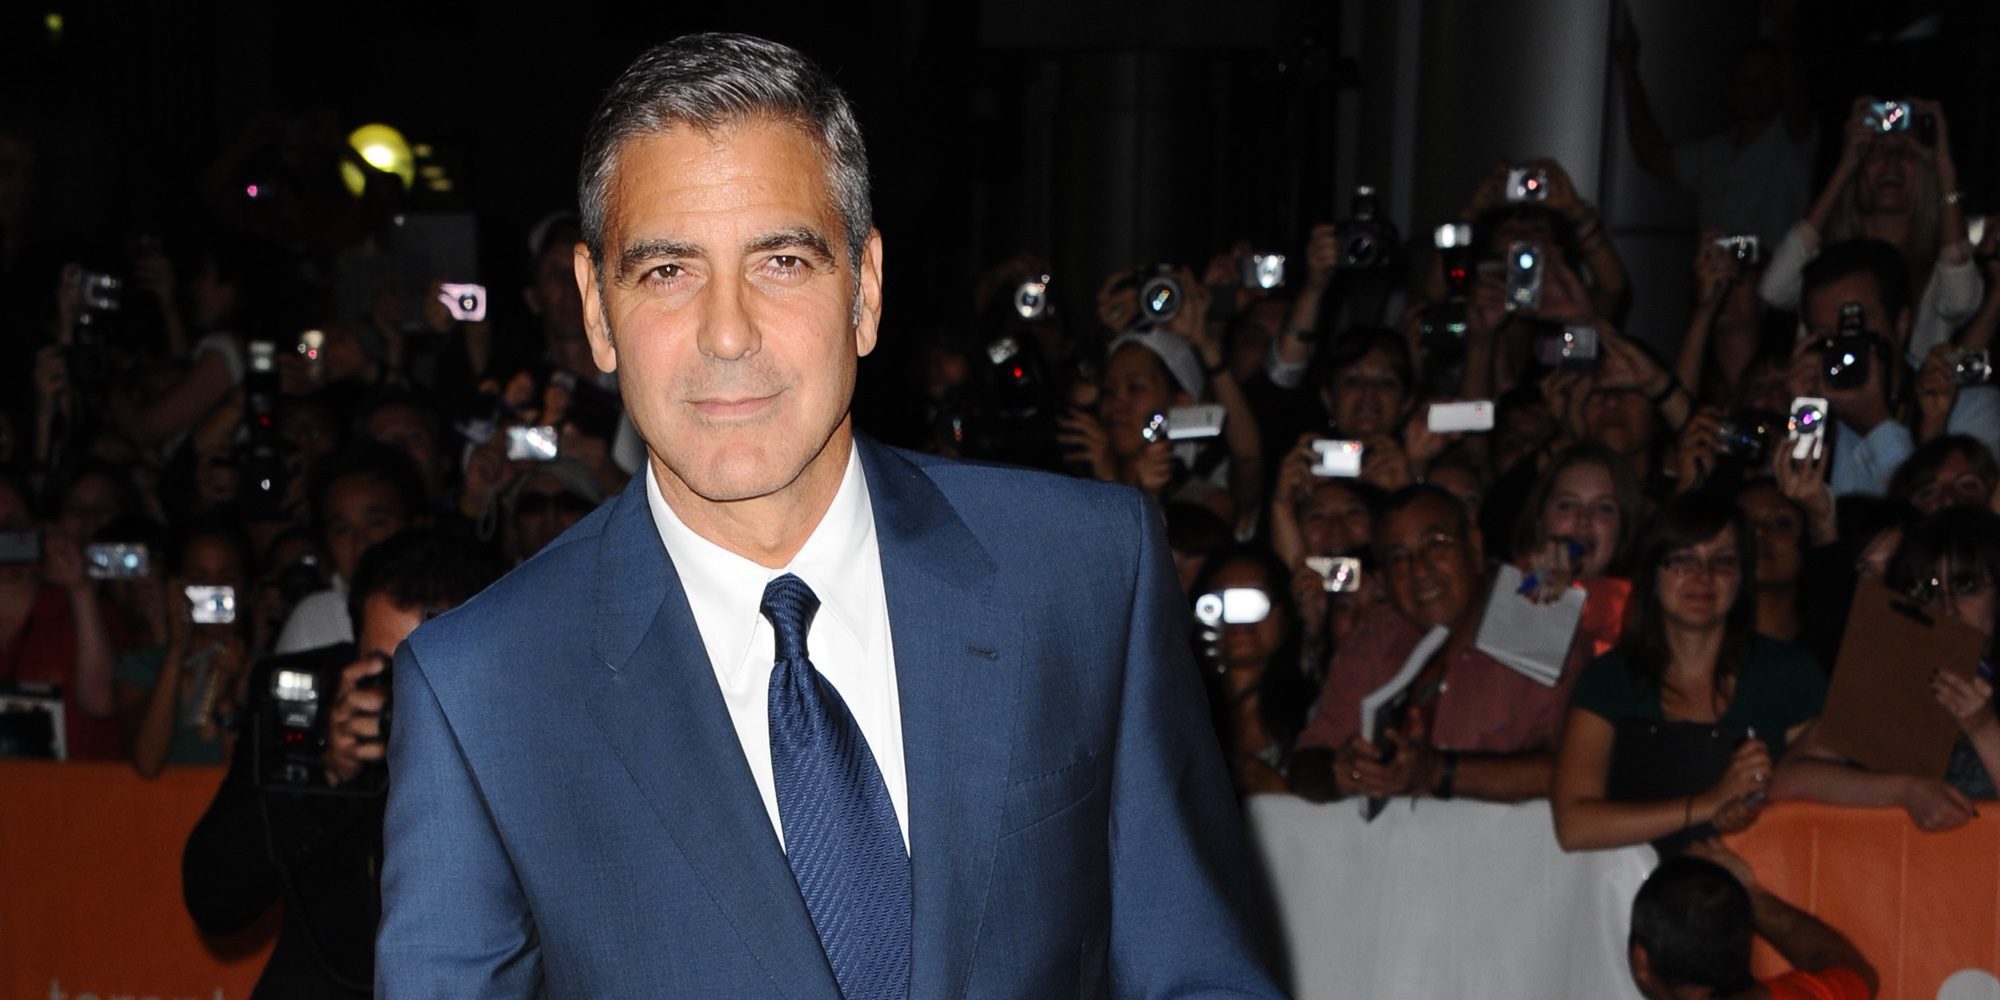 George Clooney, sobre su paternidad: "Nunca pensé que a los 56 años iba a ser padre de mellizos"